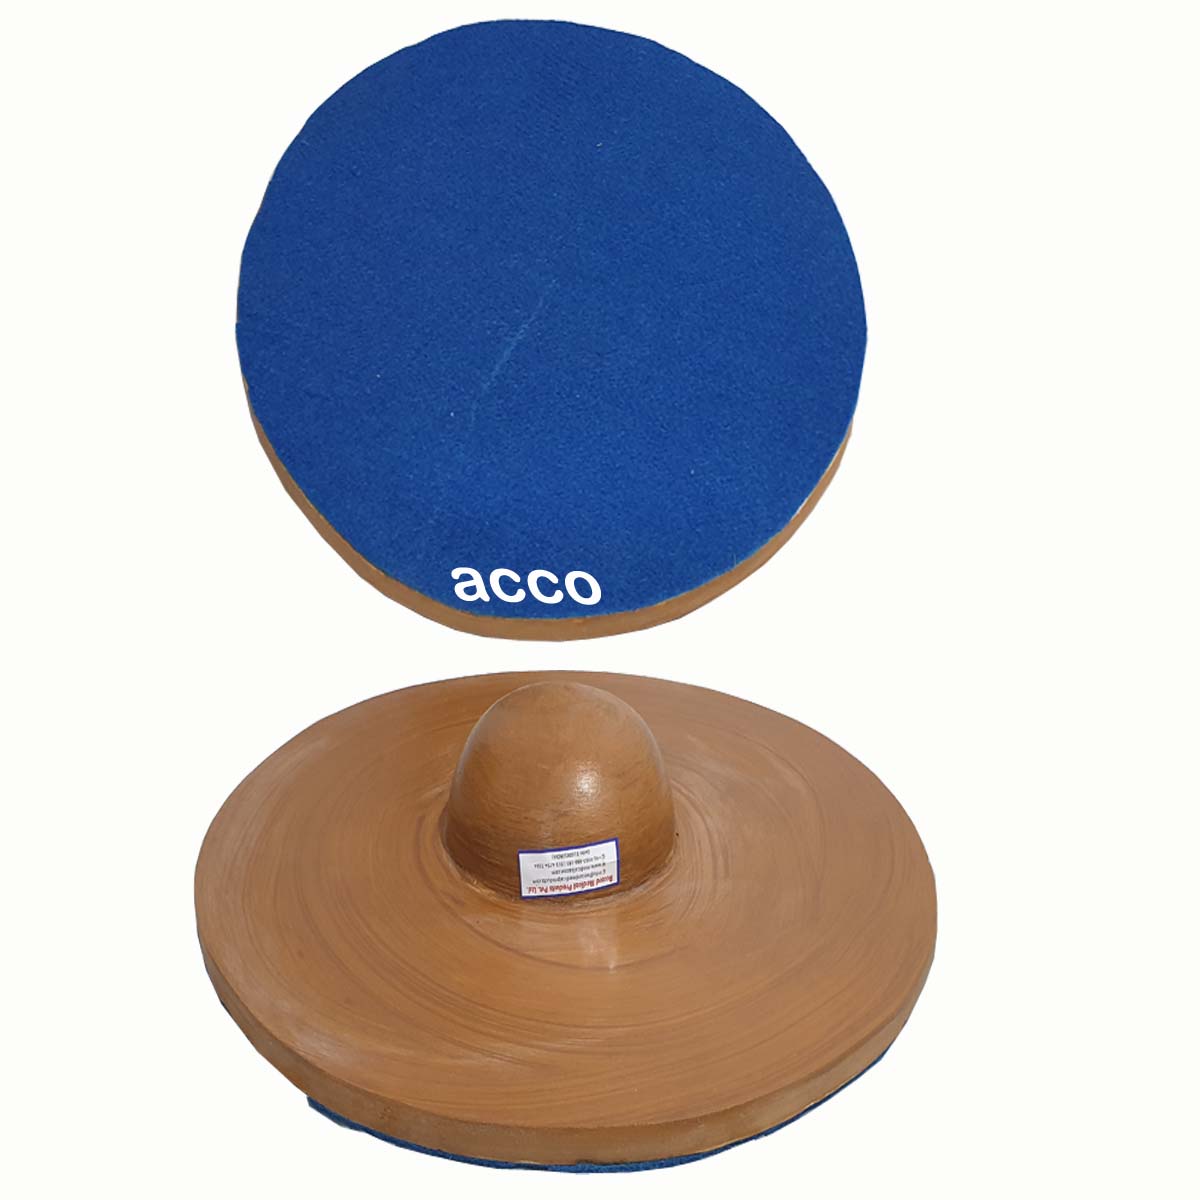 Wobble Board (Round, Wooden) – MedicalBazzar